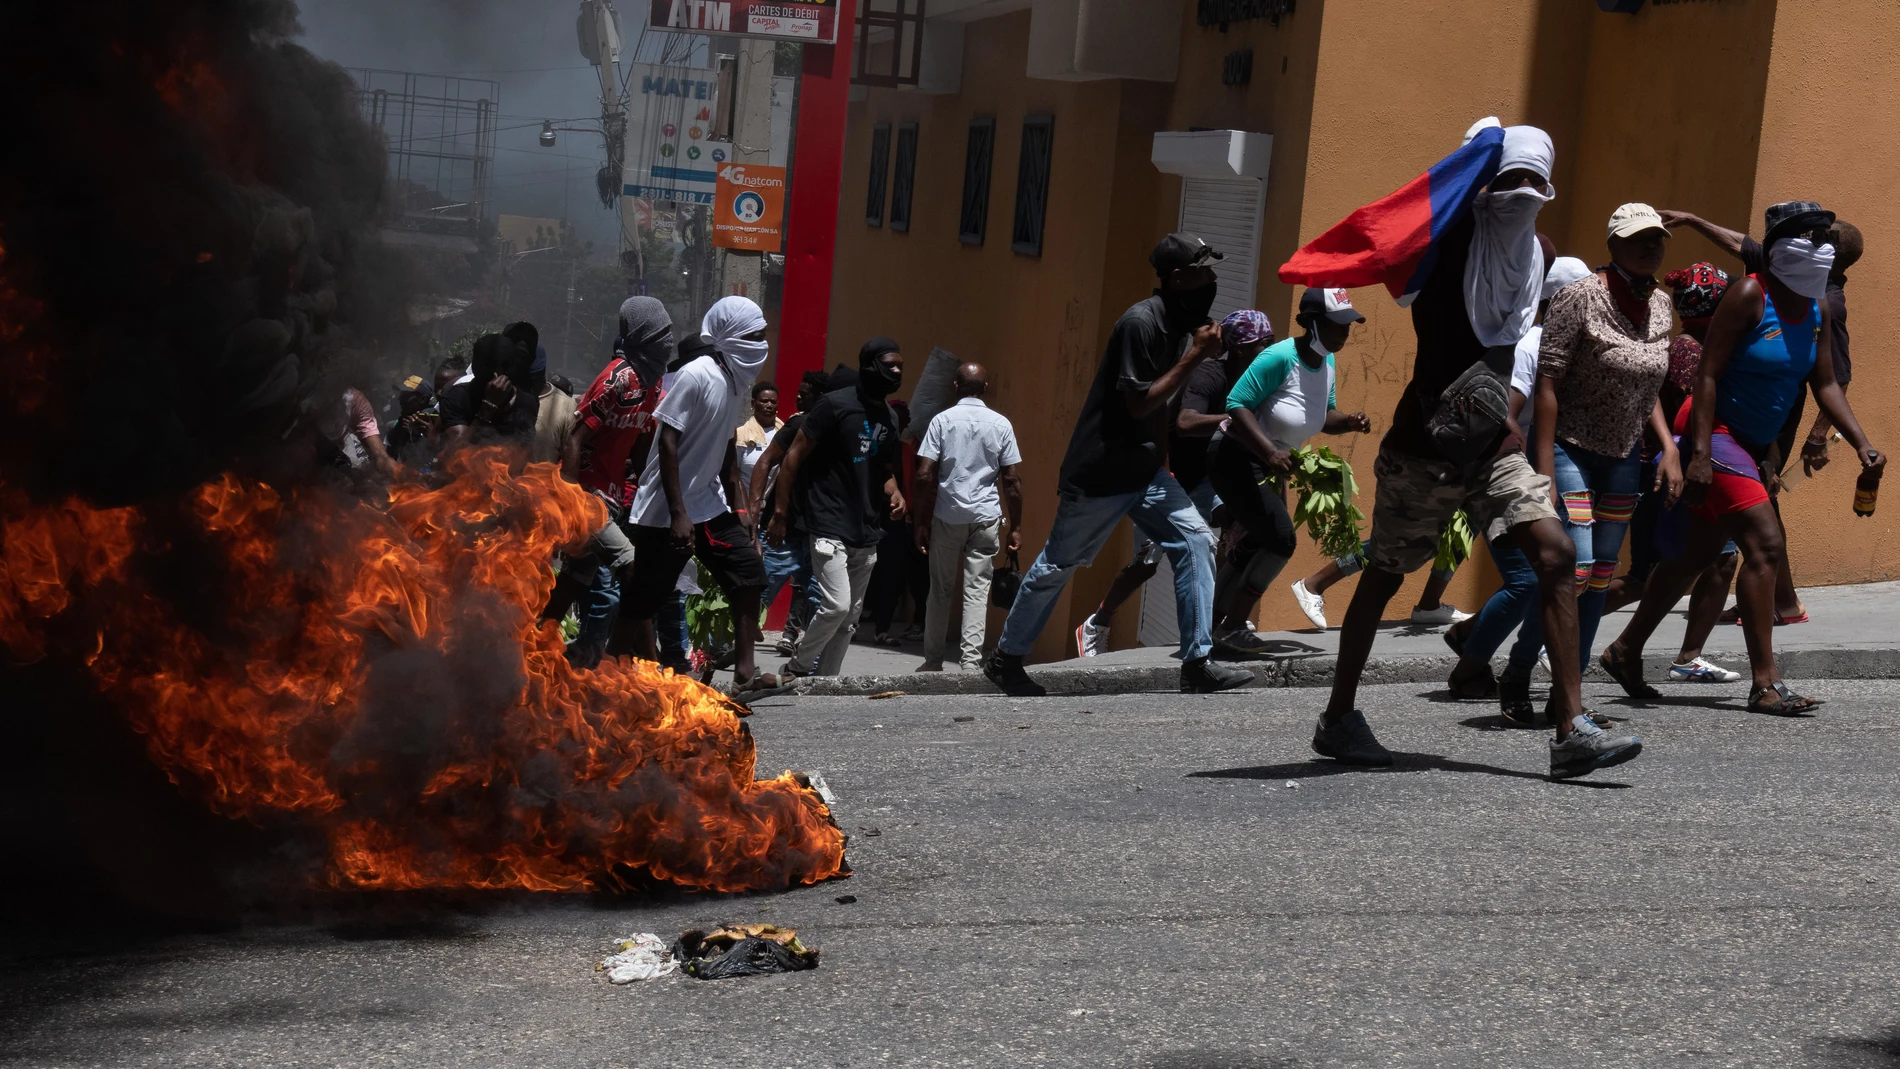 AME8814. PUERTO PRÍNCIPE (HAITÍ), 07/08/2023.- Manifestantes pasan junto a una barricada en llamas durante una marcha para exigir seguridad contra las pandillas hoy, en Puerto Príncipe (Haití). Cientos de haitianos salieron este lunes a las calles de Puerto Príncipe para manifestarse contra la situación de inseguridad, creada por la acción de las bandas armadas que obliga a miles de personas a convertirse en refugiados internos, y para criticar a las autoridades por su inacción. A lo largo de...